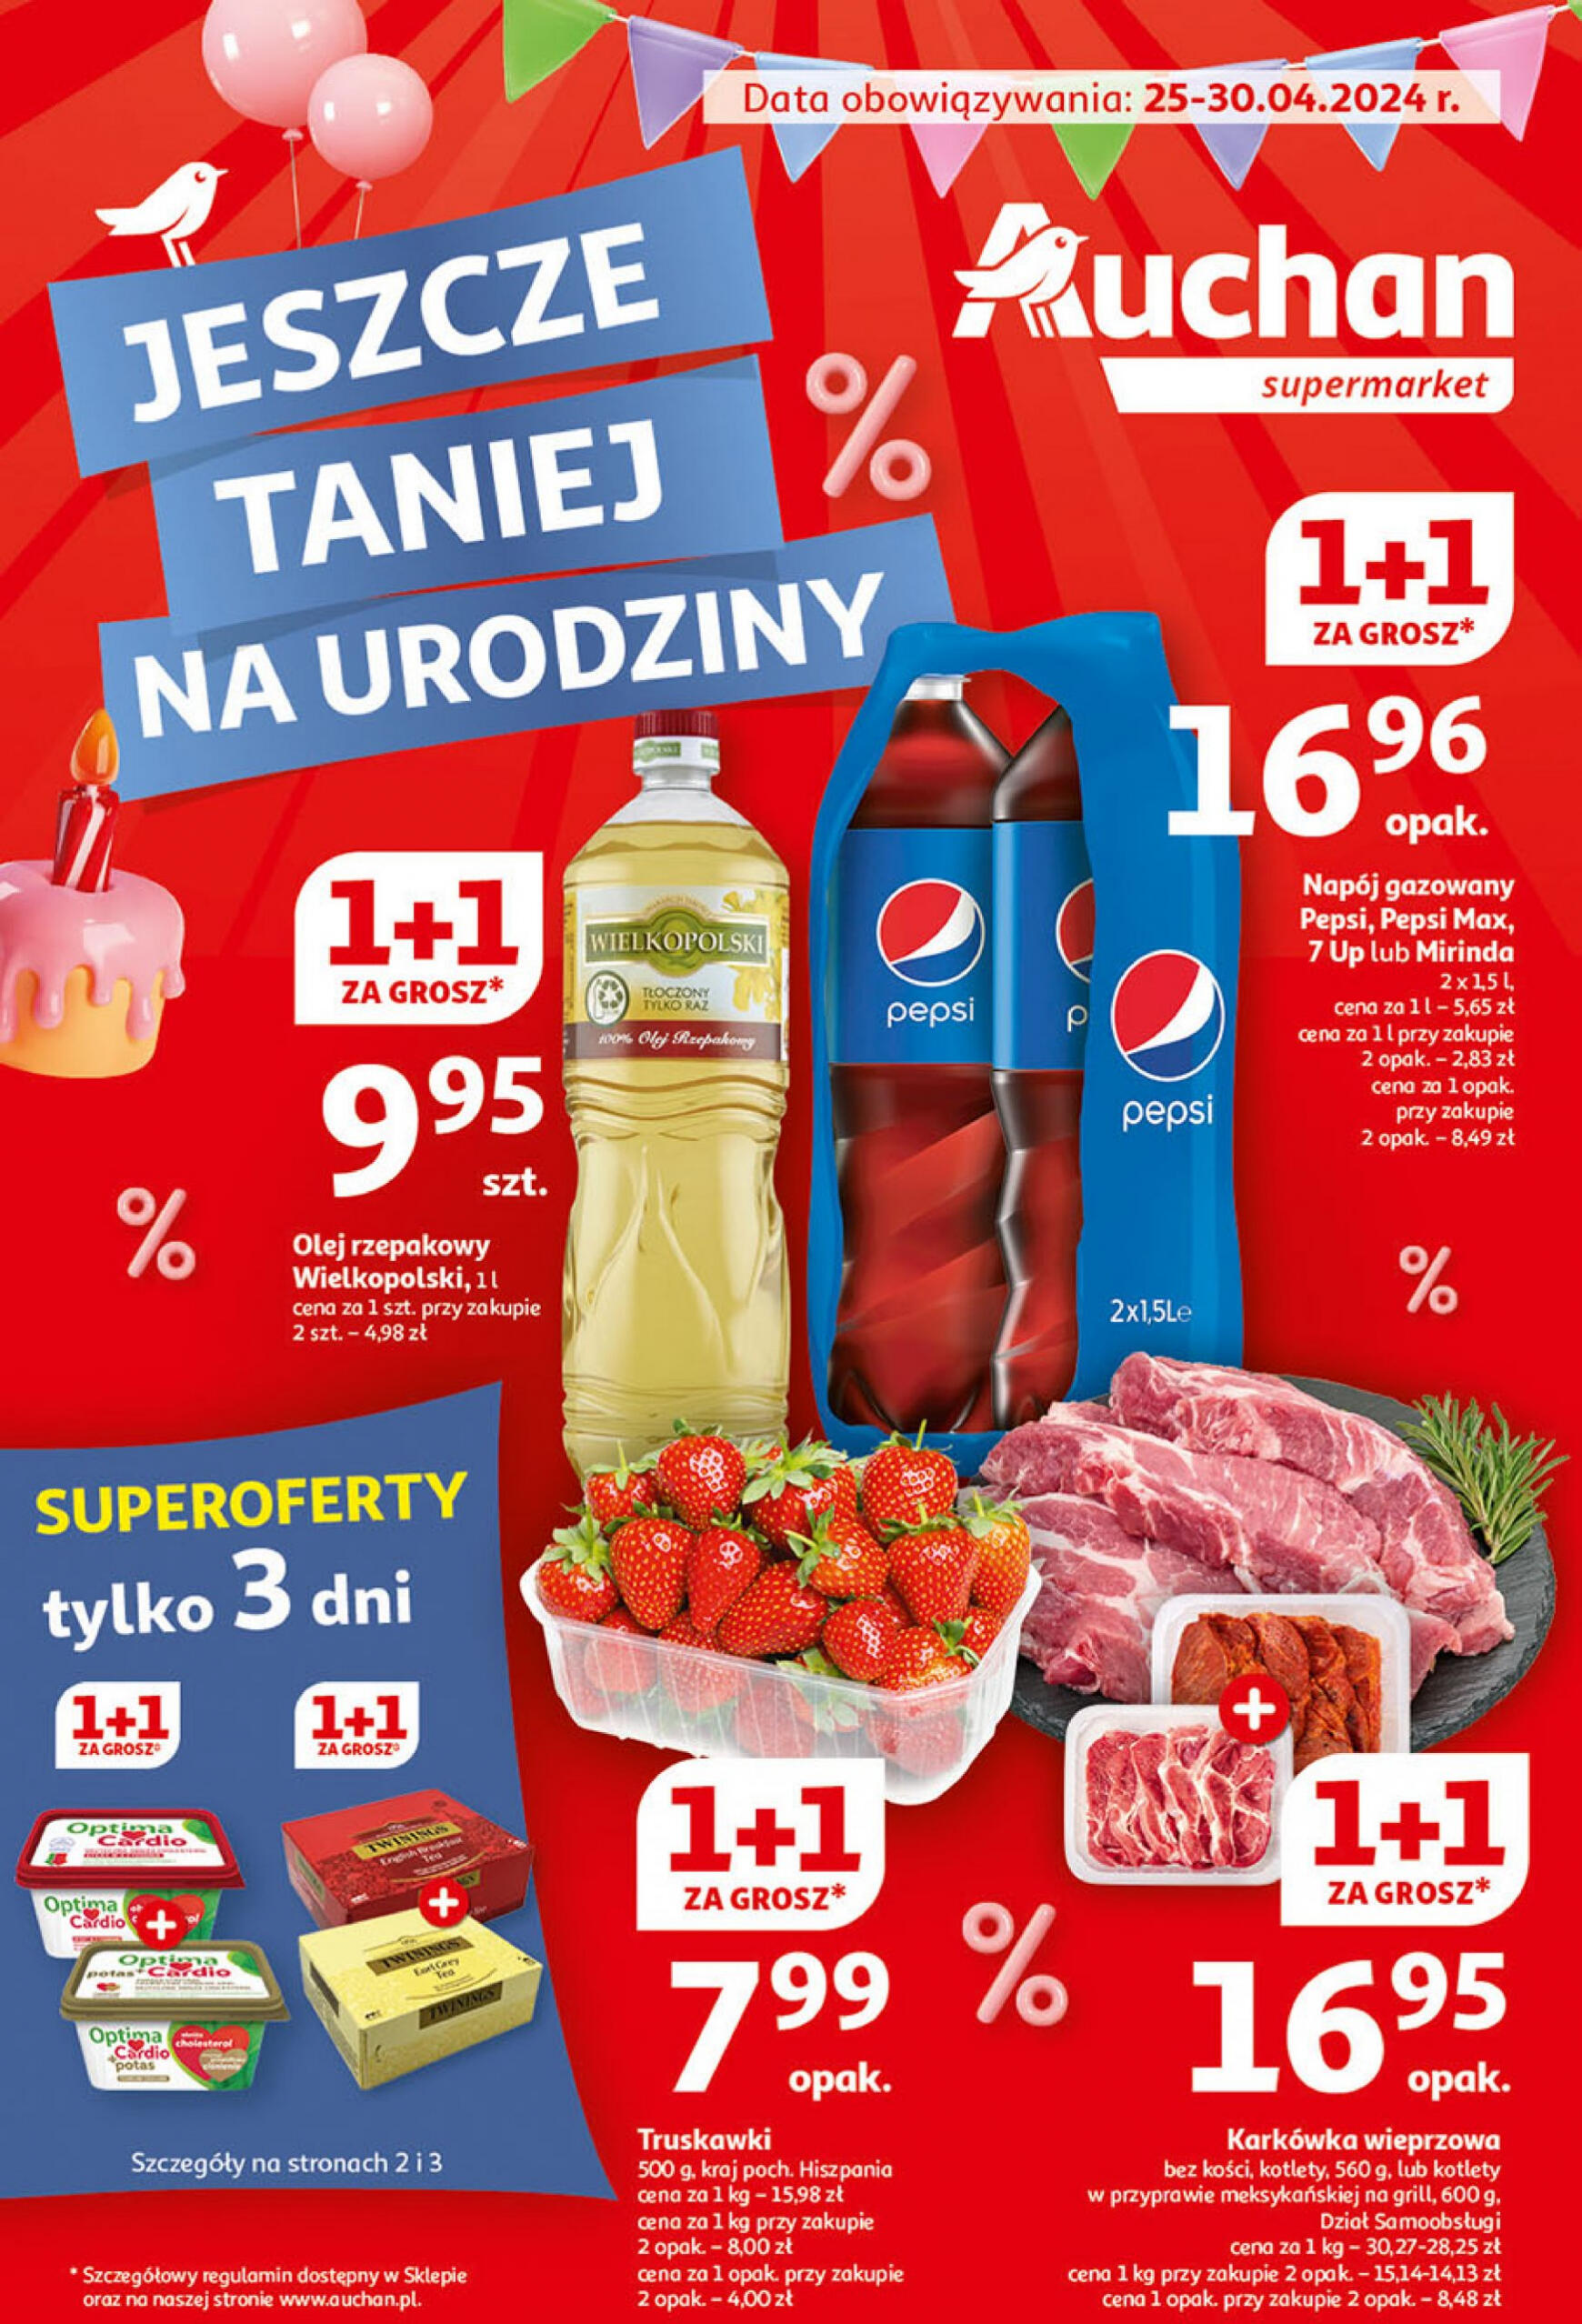 auchan - Supermarket Auchan - Gazetka Jeszcze taniej na urodziny gazetka aktualna ważna od 25.04. - 30.04. - page: 1